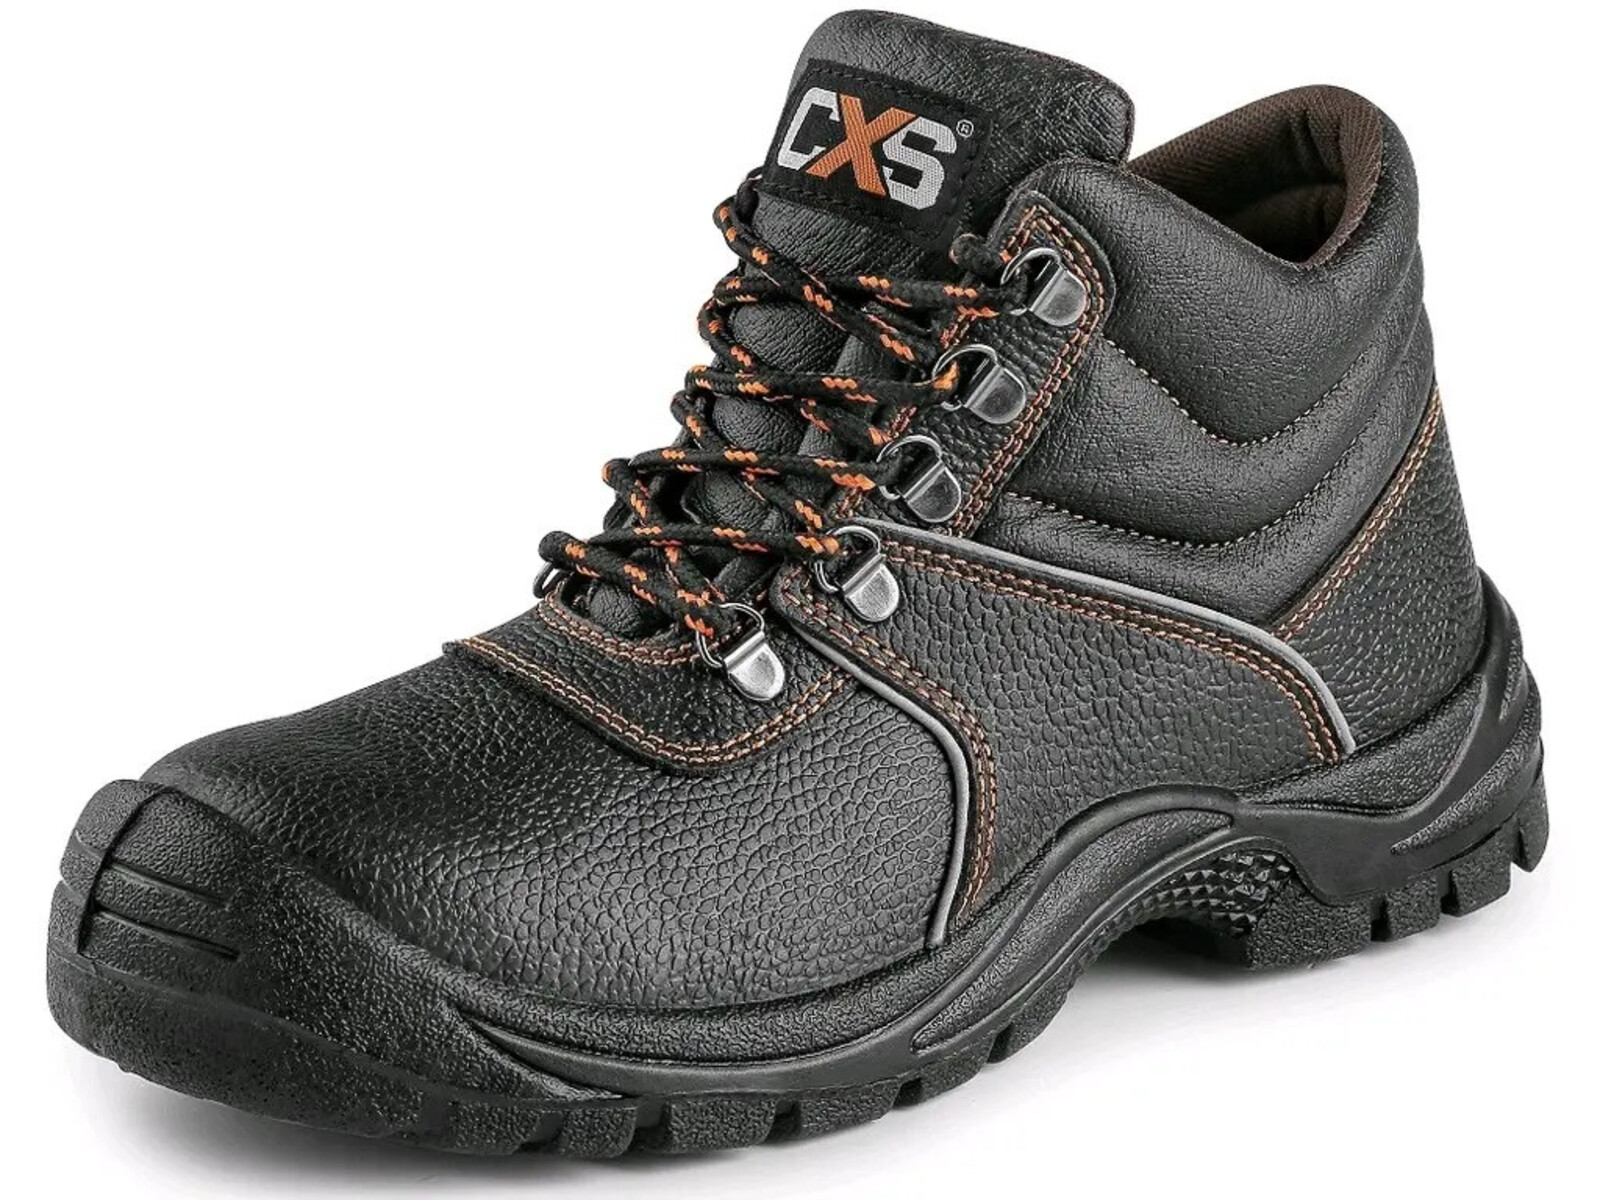 Bezpečnostná členková obuv CXS Stone Marble S2 SRC - veľkosť: 43, farba: čierna/oranžová